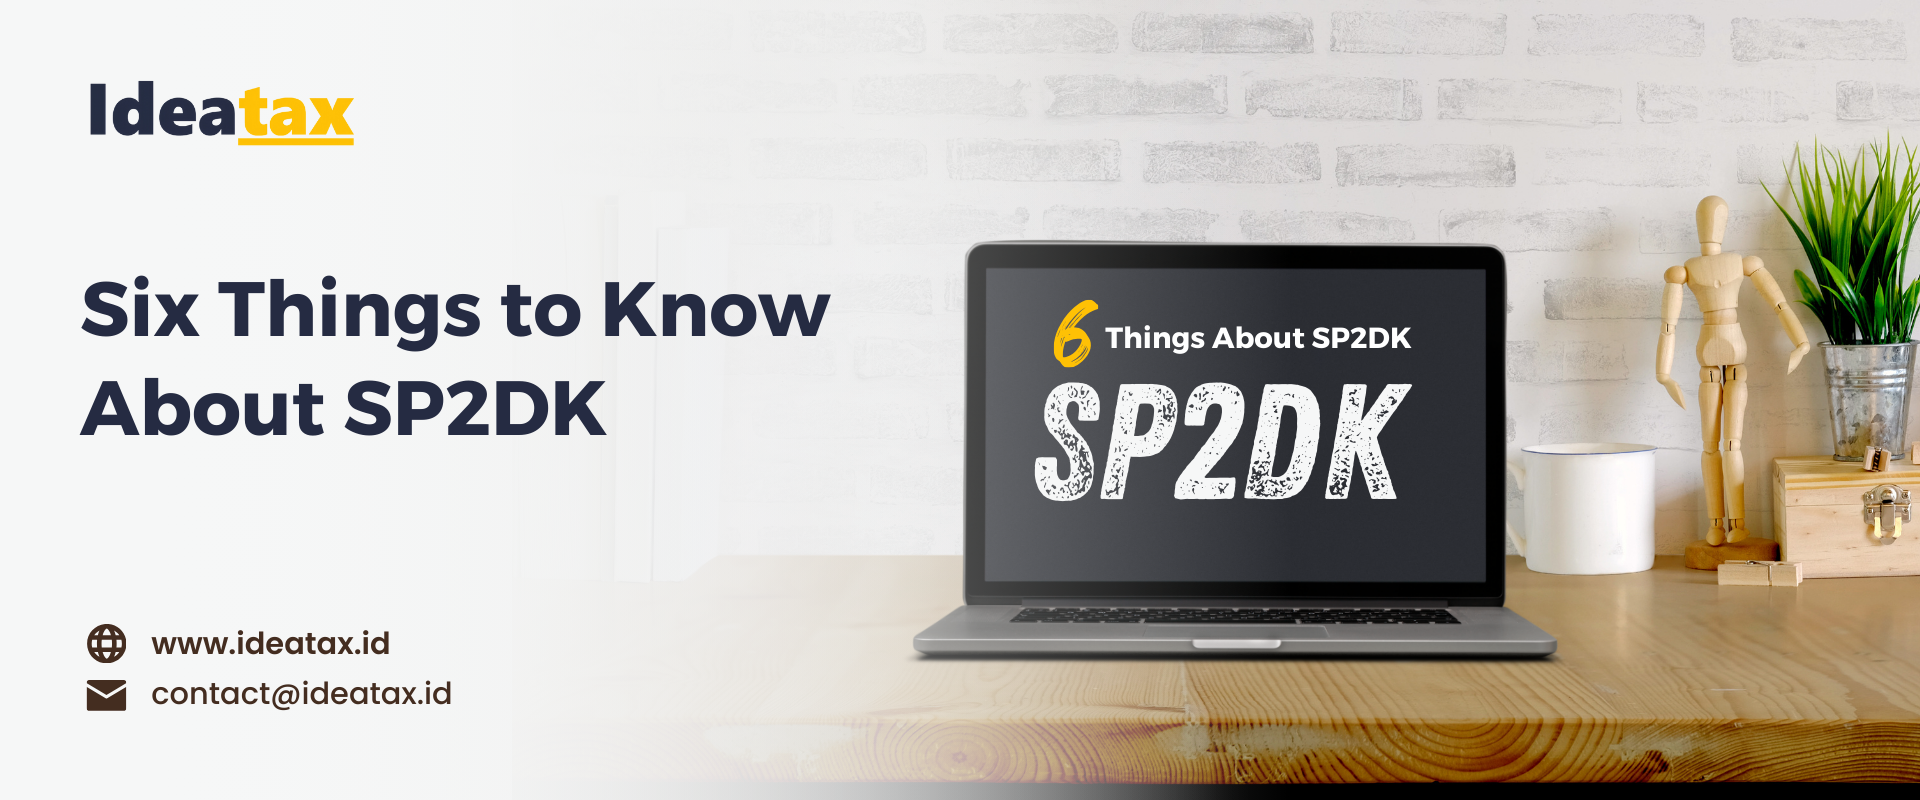 Enam Hal Yang Perlu Diketahui Tentang SP2DK